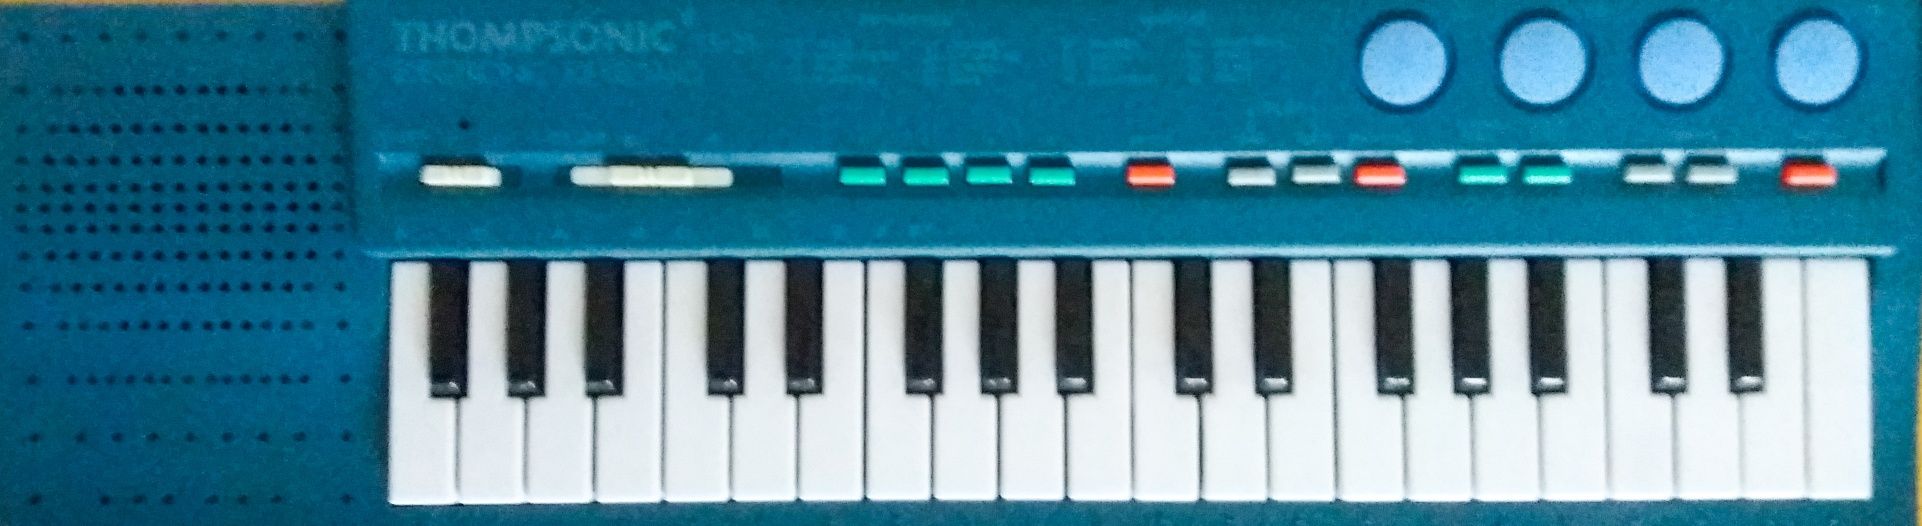 Keyboard Thomsonic ts-21